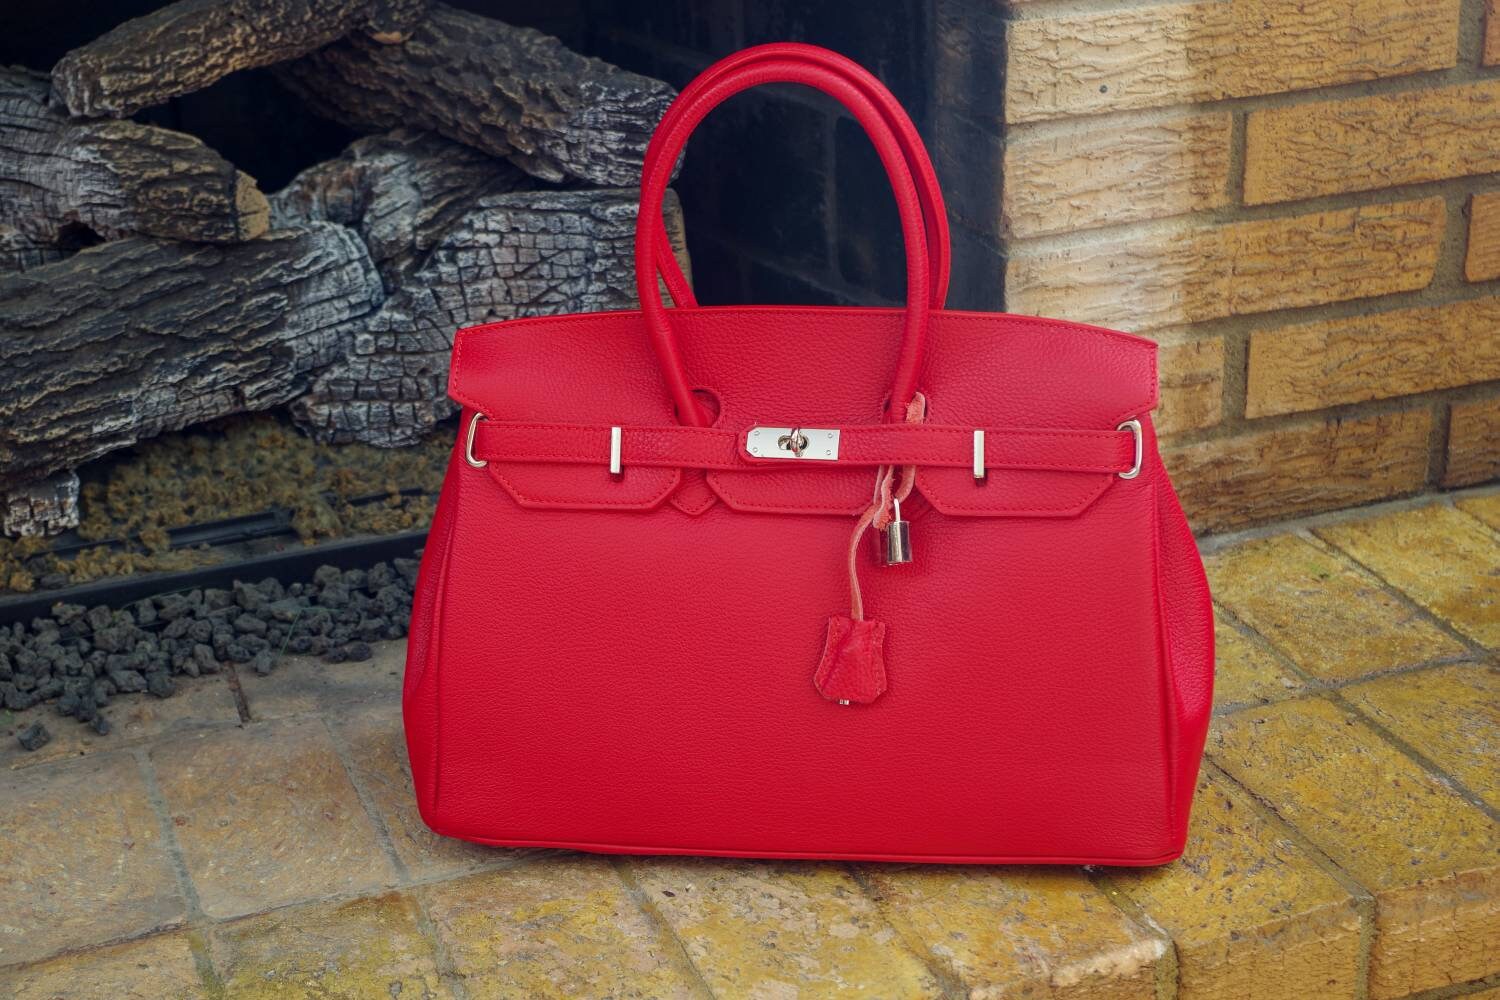 The Washington DC Luxury Designer Leather Handbag by Paul | Etsy